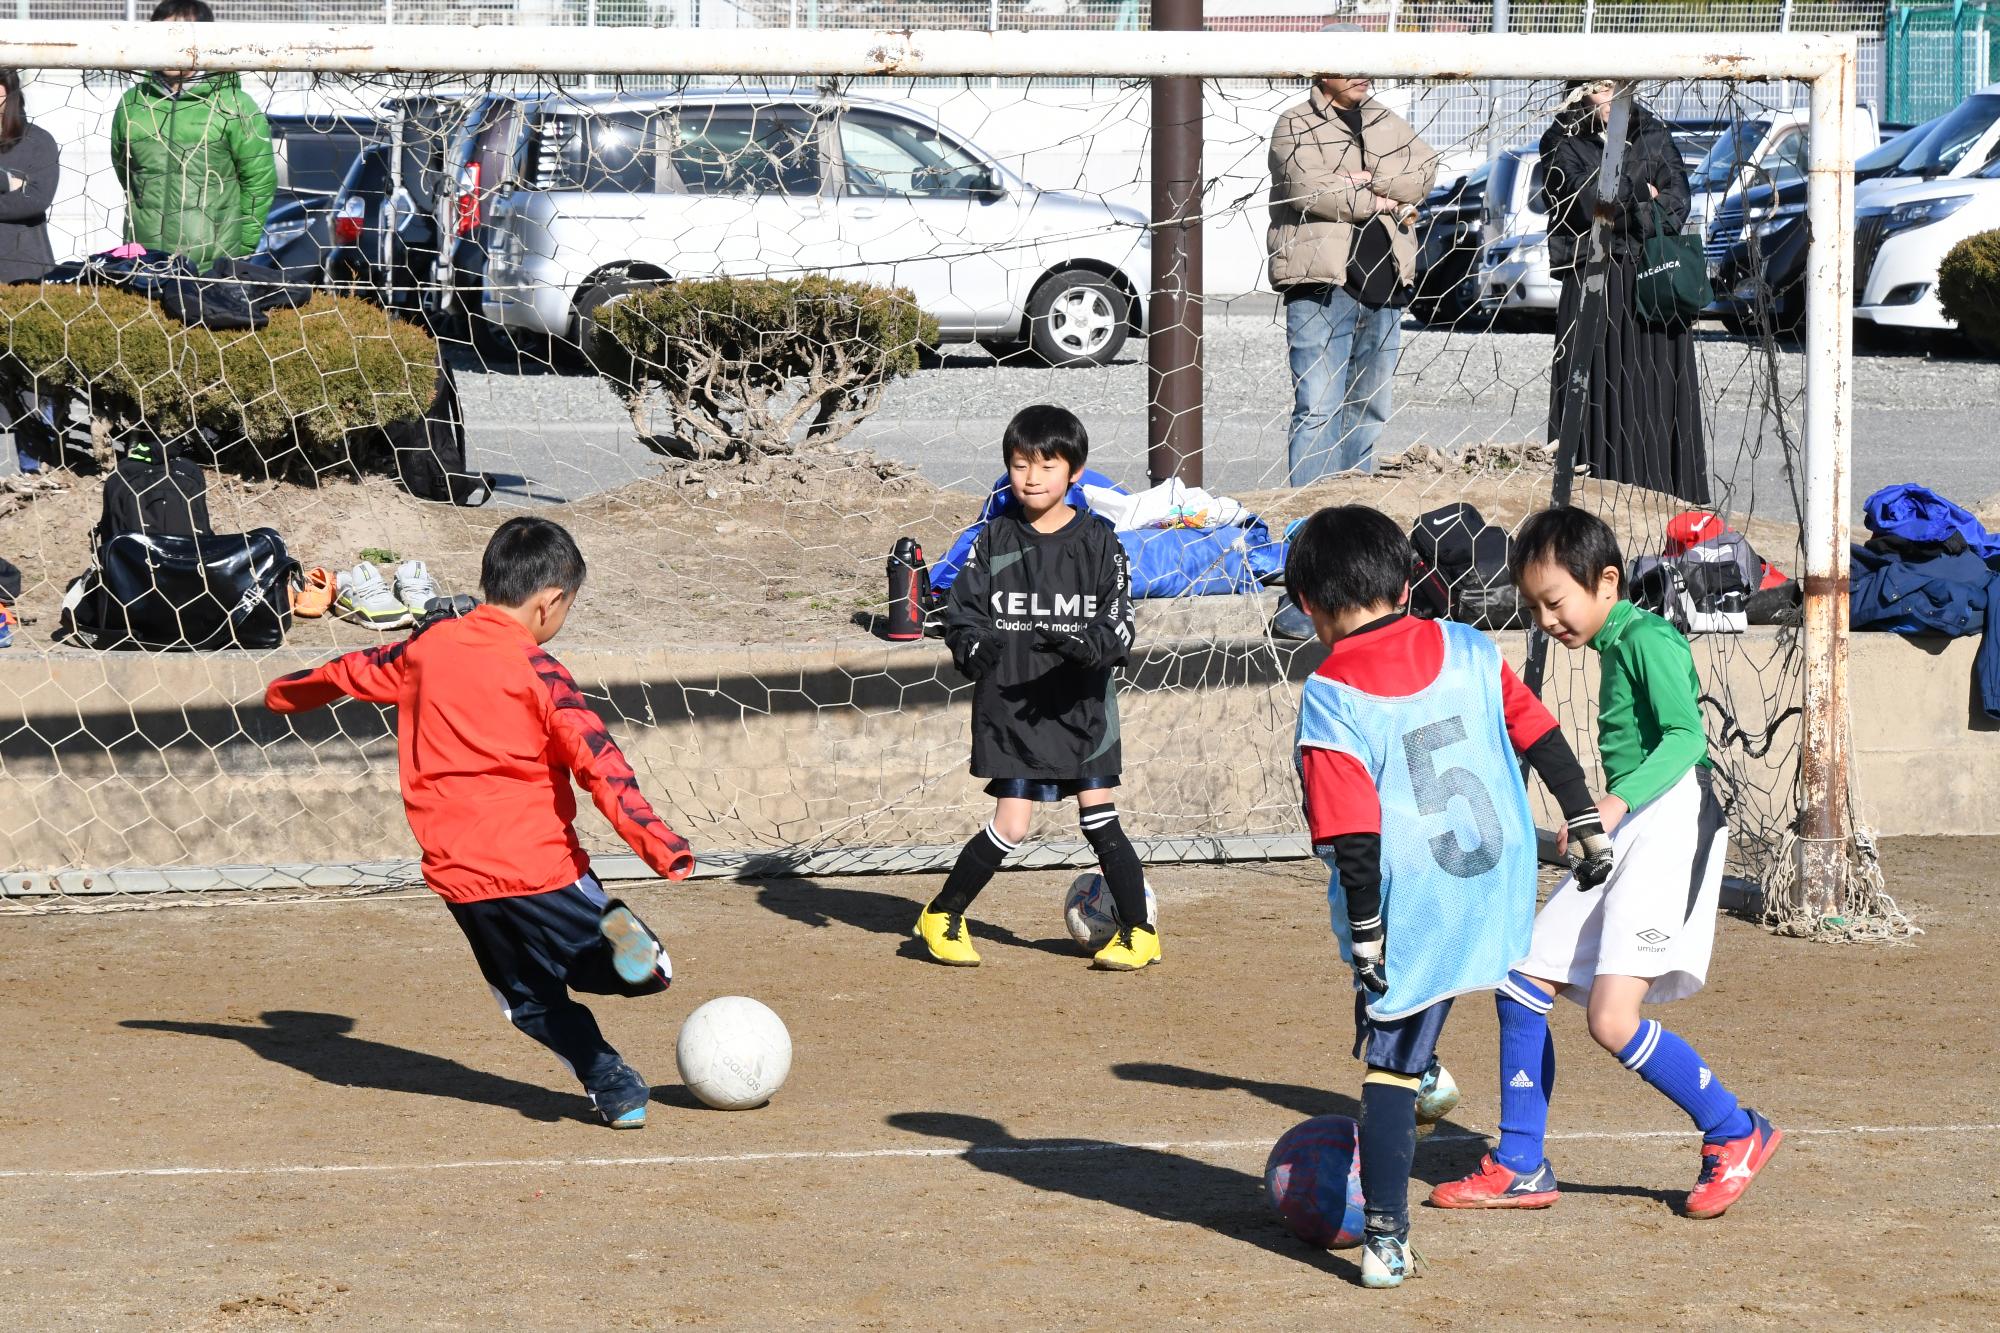 2020初蹴りサッカー大会竜王地区